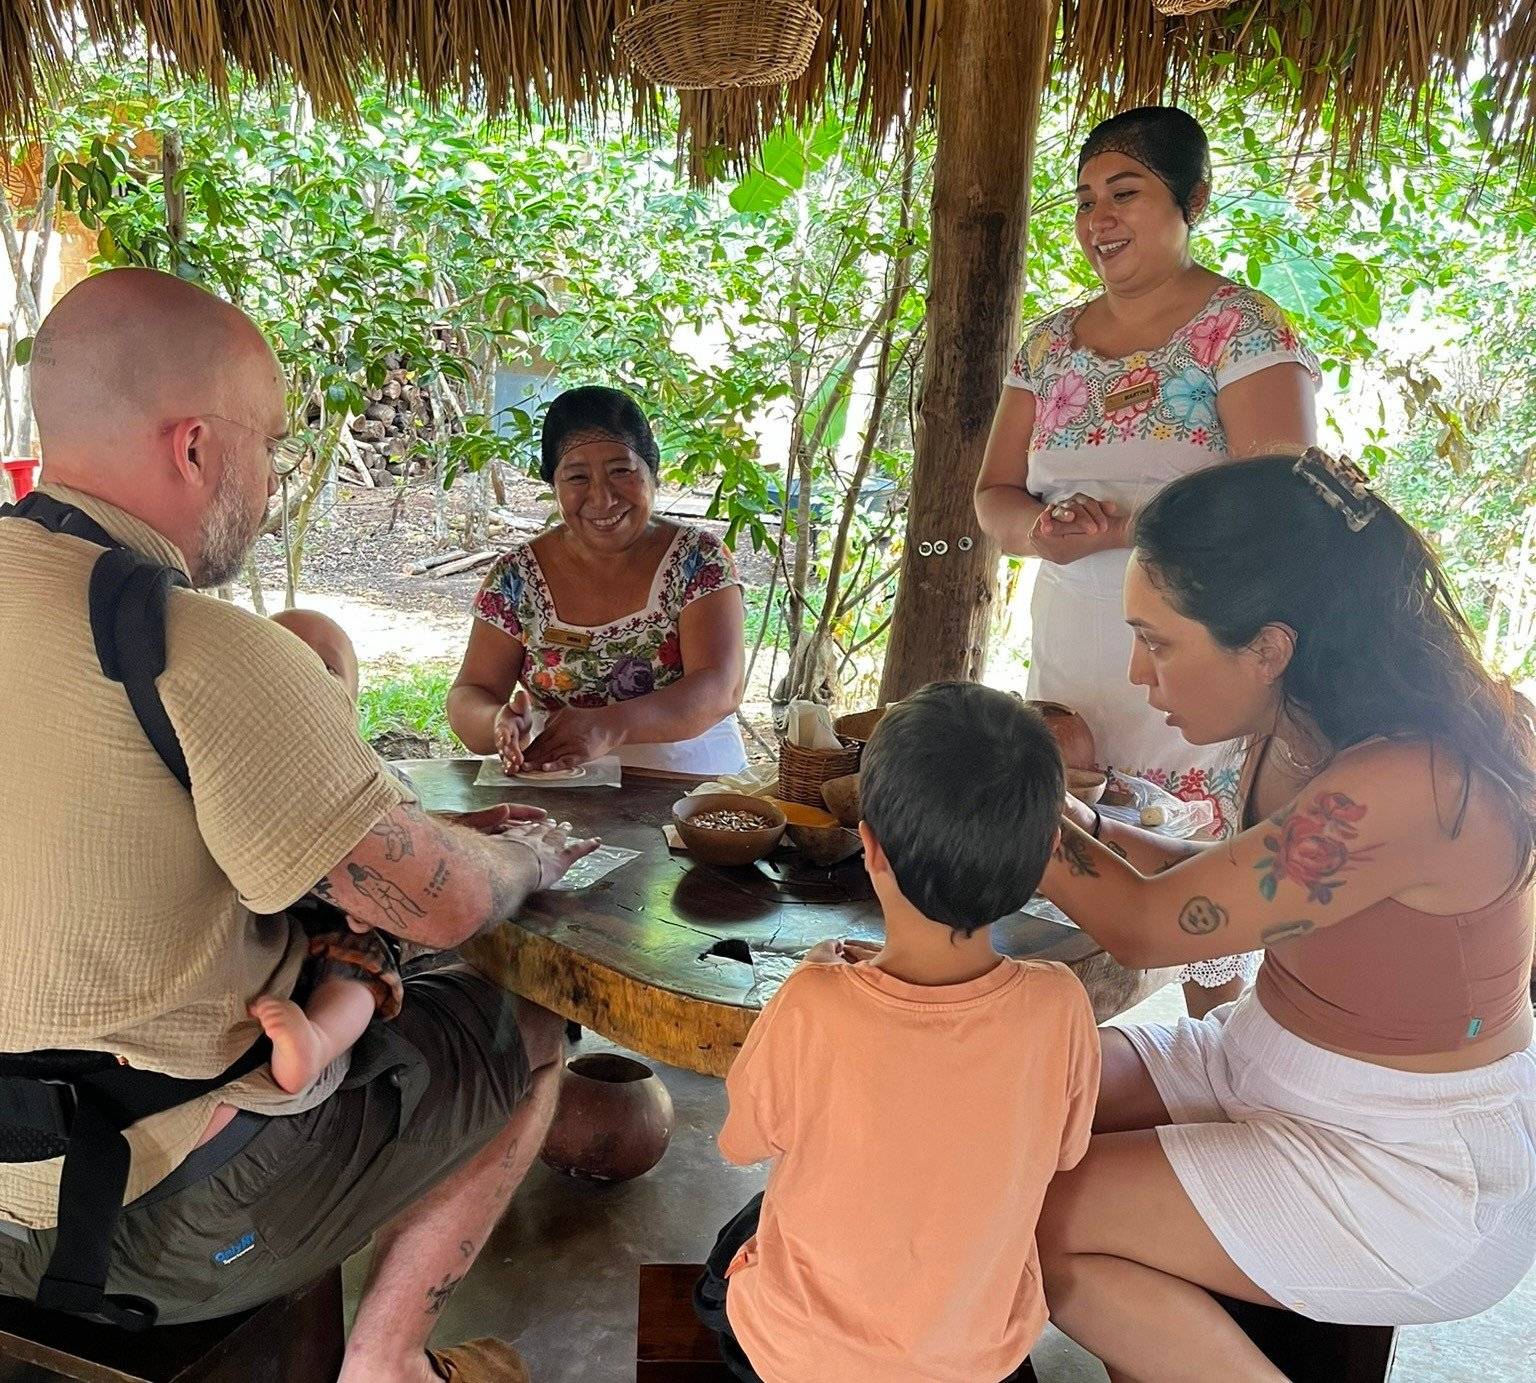 Expérience culinaire avec la communauté maya